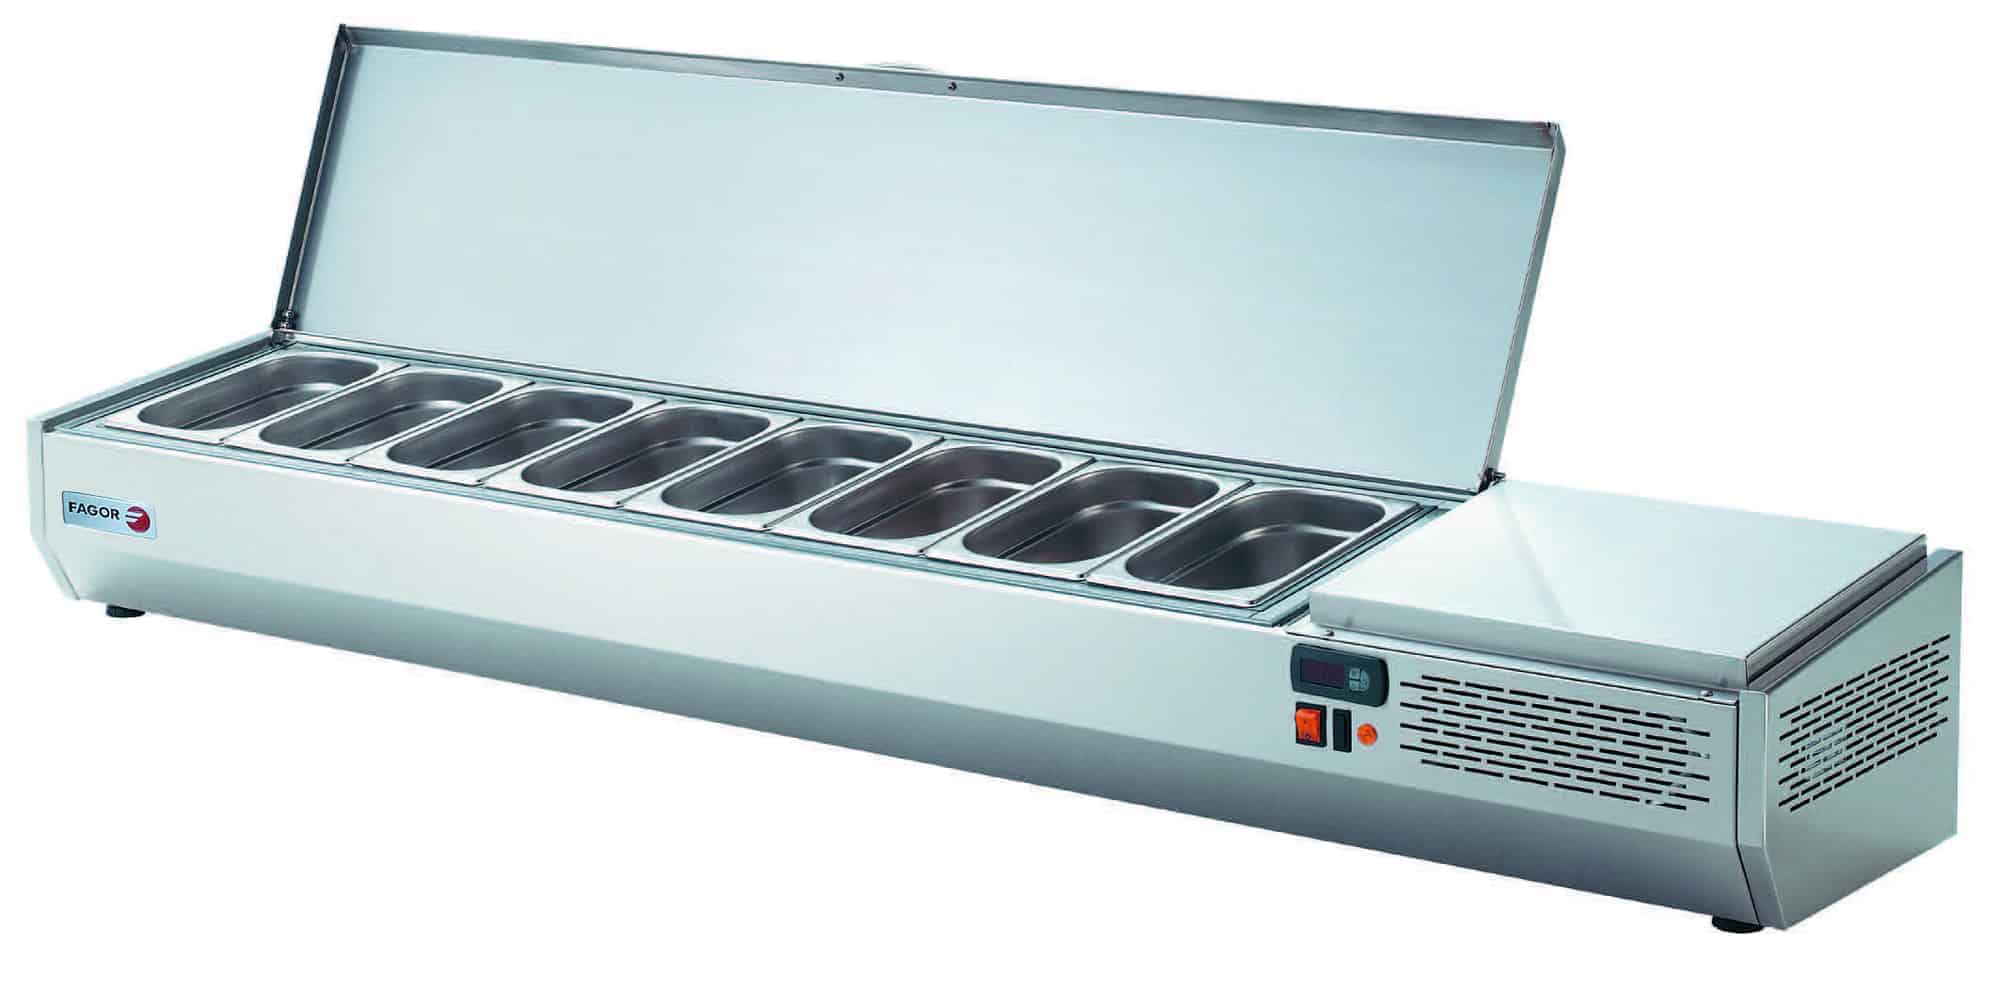 Nadstawka chłodnicza na pojemniki 5 x 1/4 GN, z pokrywą, 1342x336x250, Fagor Professional SPT-2G